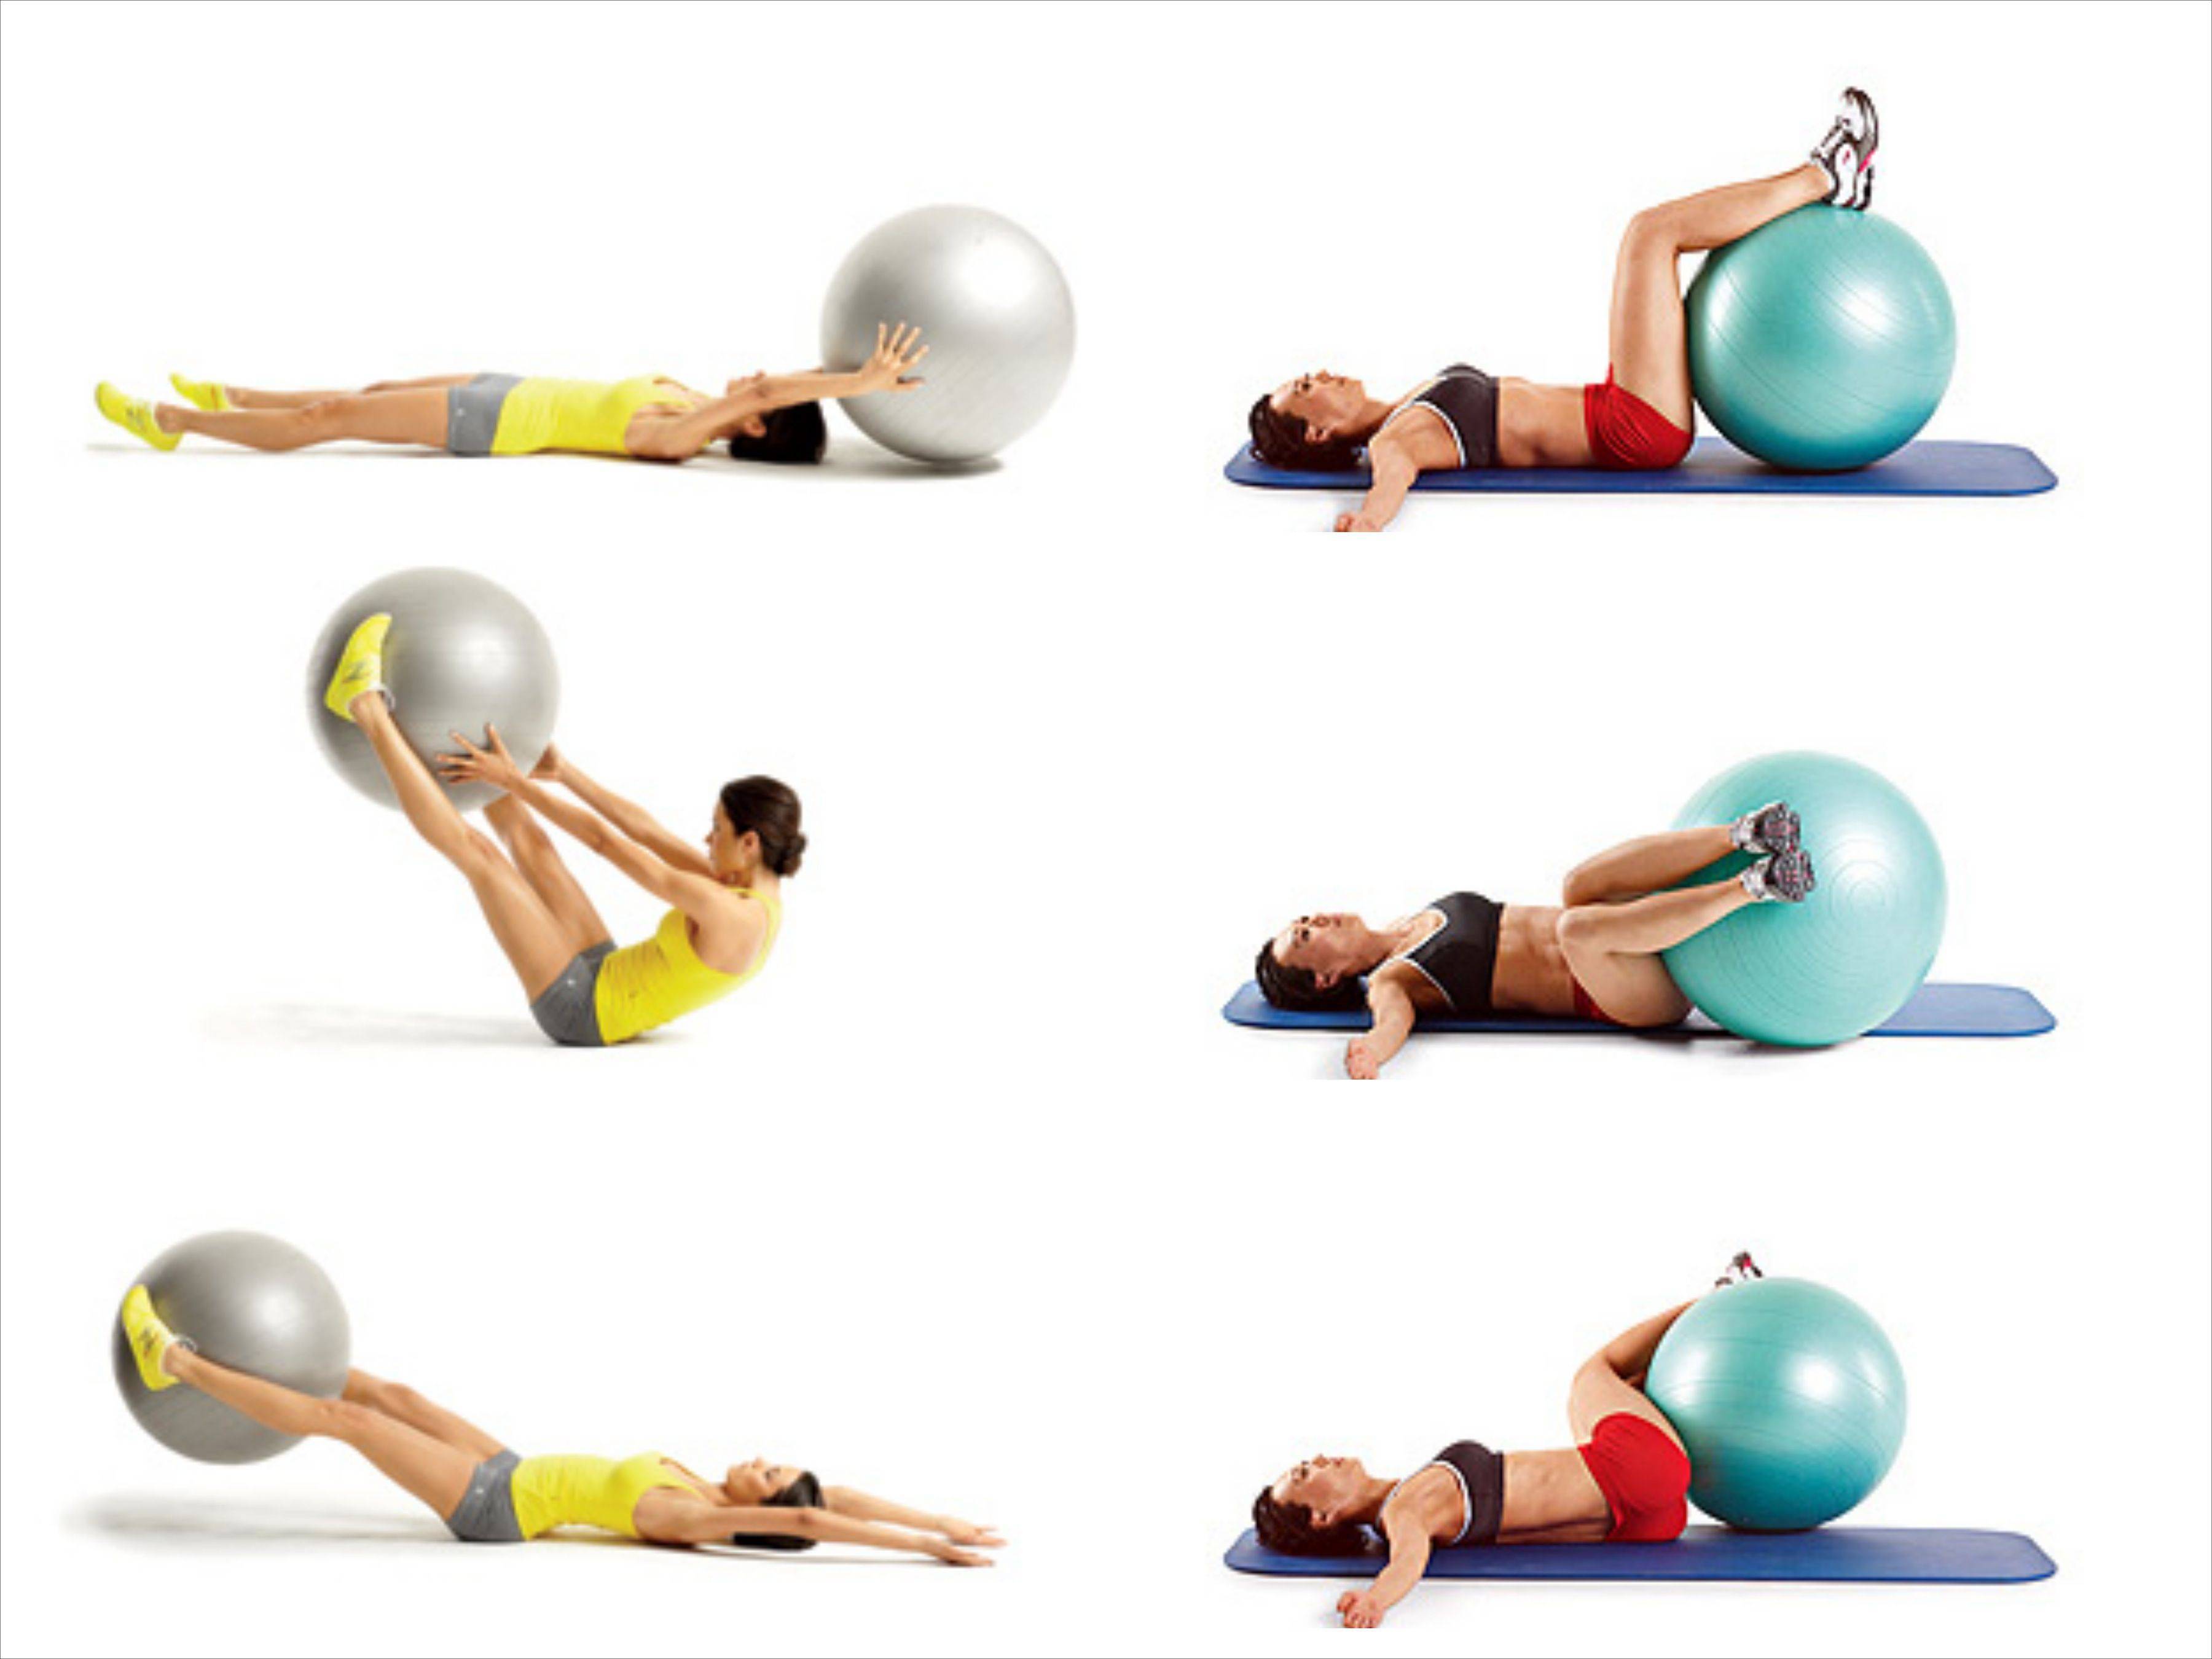 Ball exercises. Упражнения на фитболе для спины и позвоночника. Упражнения с фитболом для укрепления мышц спины и позвоночника. Фитбол комплекс упражнений. Занятия для мышц спины на фитболе.